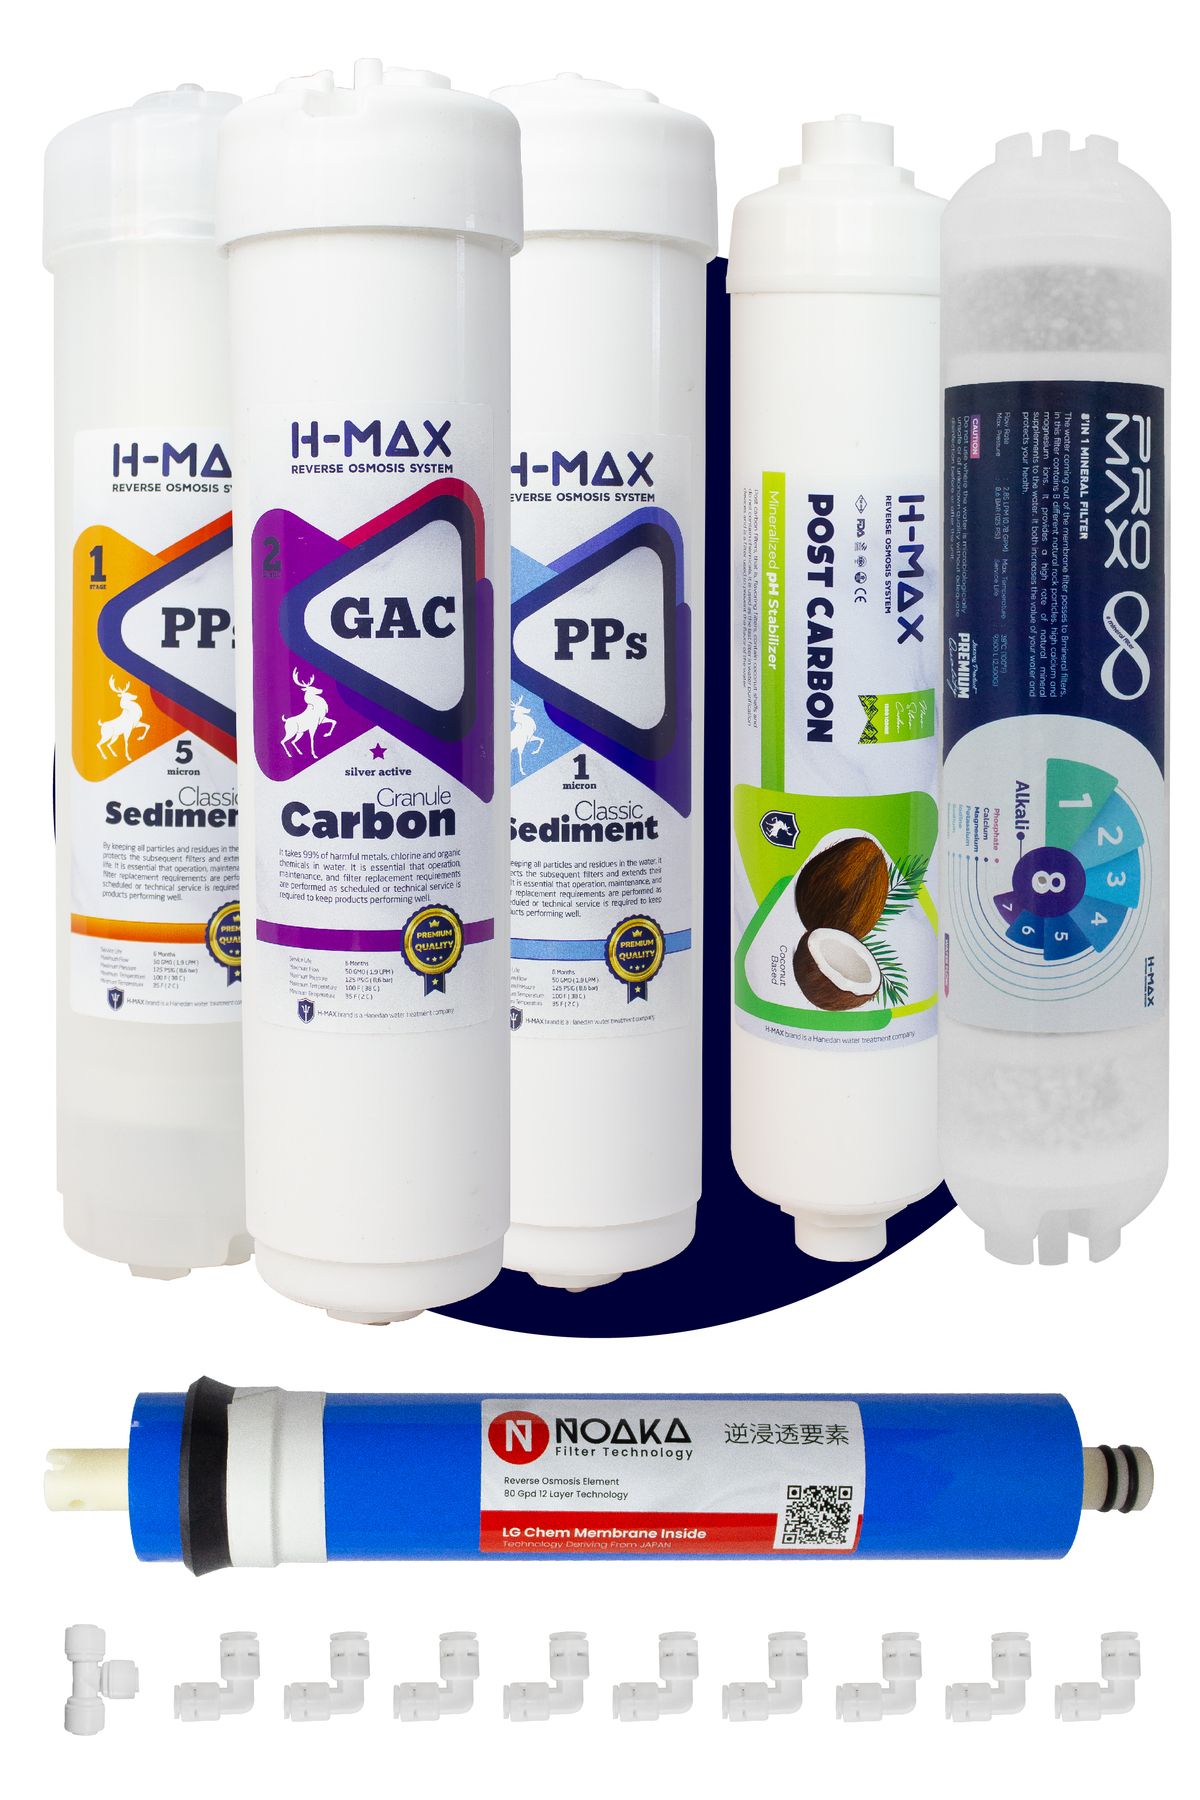 H-MAX Reverse Osmosis System H-max Lg Membranlı Kapalı Kasa Su Arıtma Cihazı 6'lı Filtre Seti - 0058